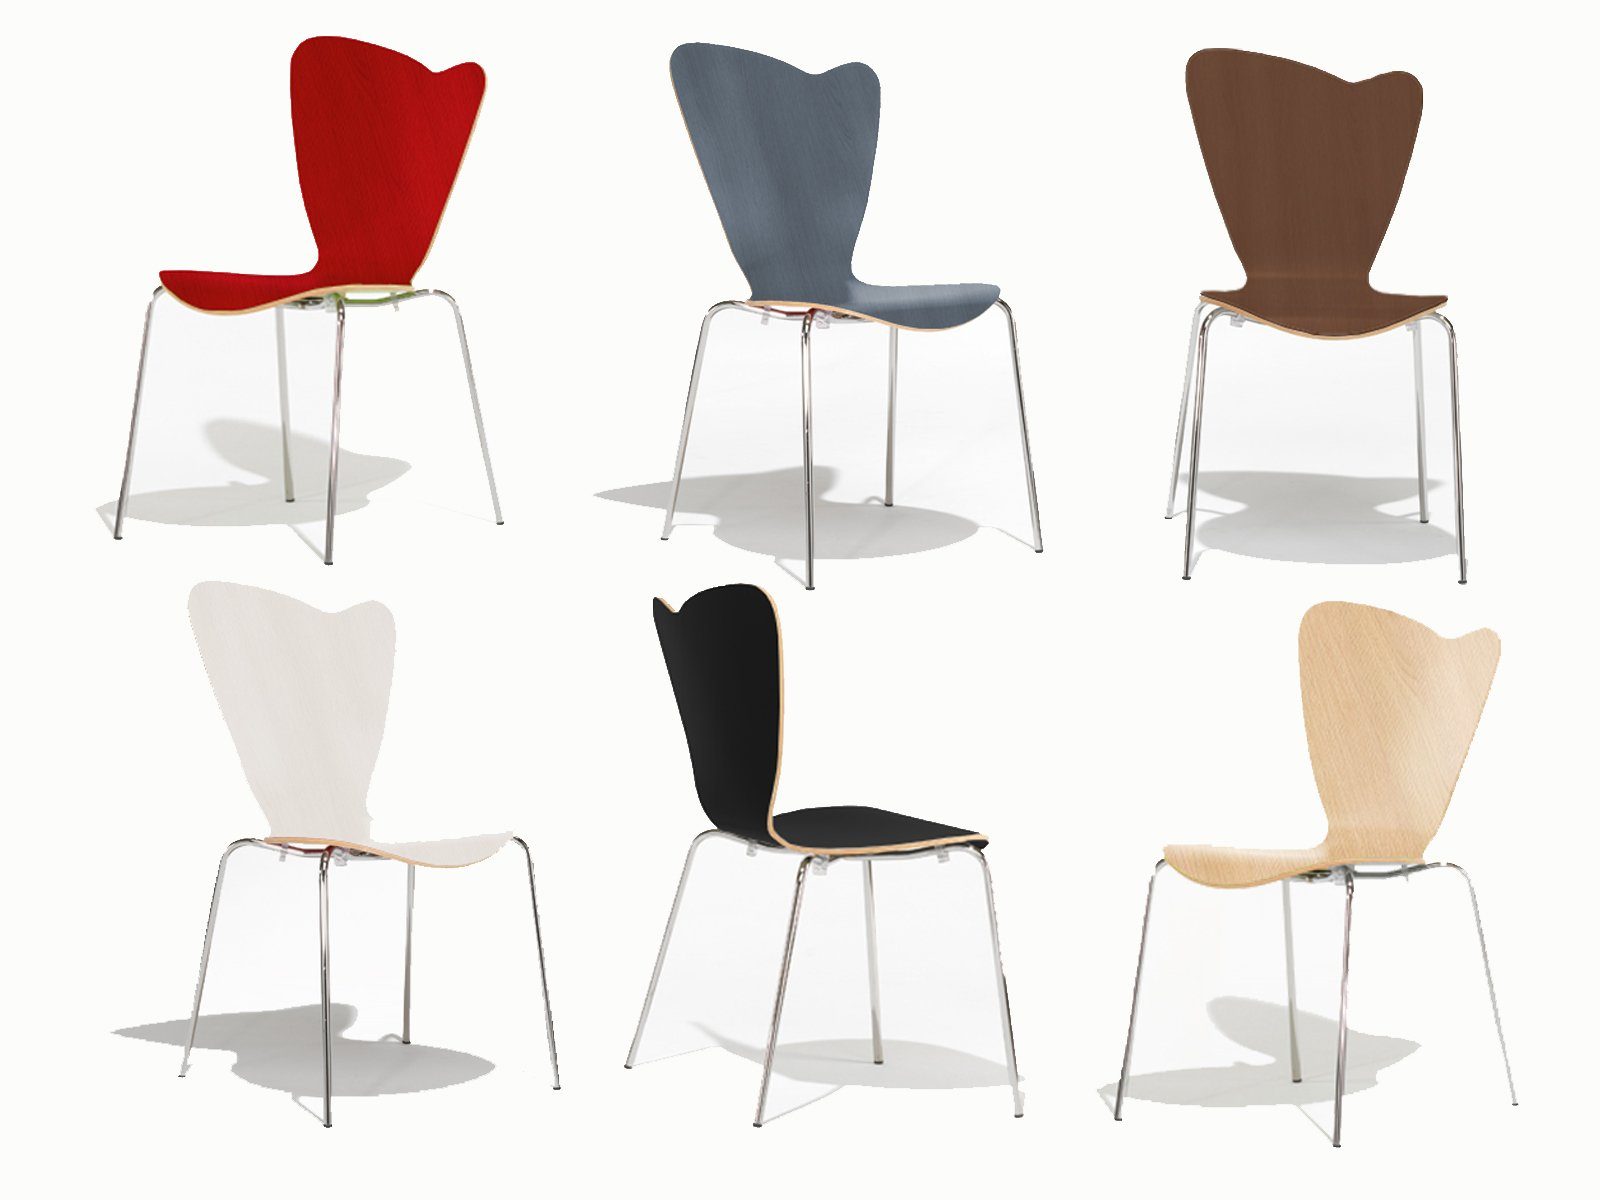 Mauser Sitzkultur Stapelstuhl, ergonomisch-er Schalenstuhl Weiß Wartezimmerstuhl, Bistro-stuhl Gastro